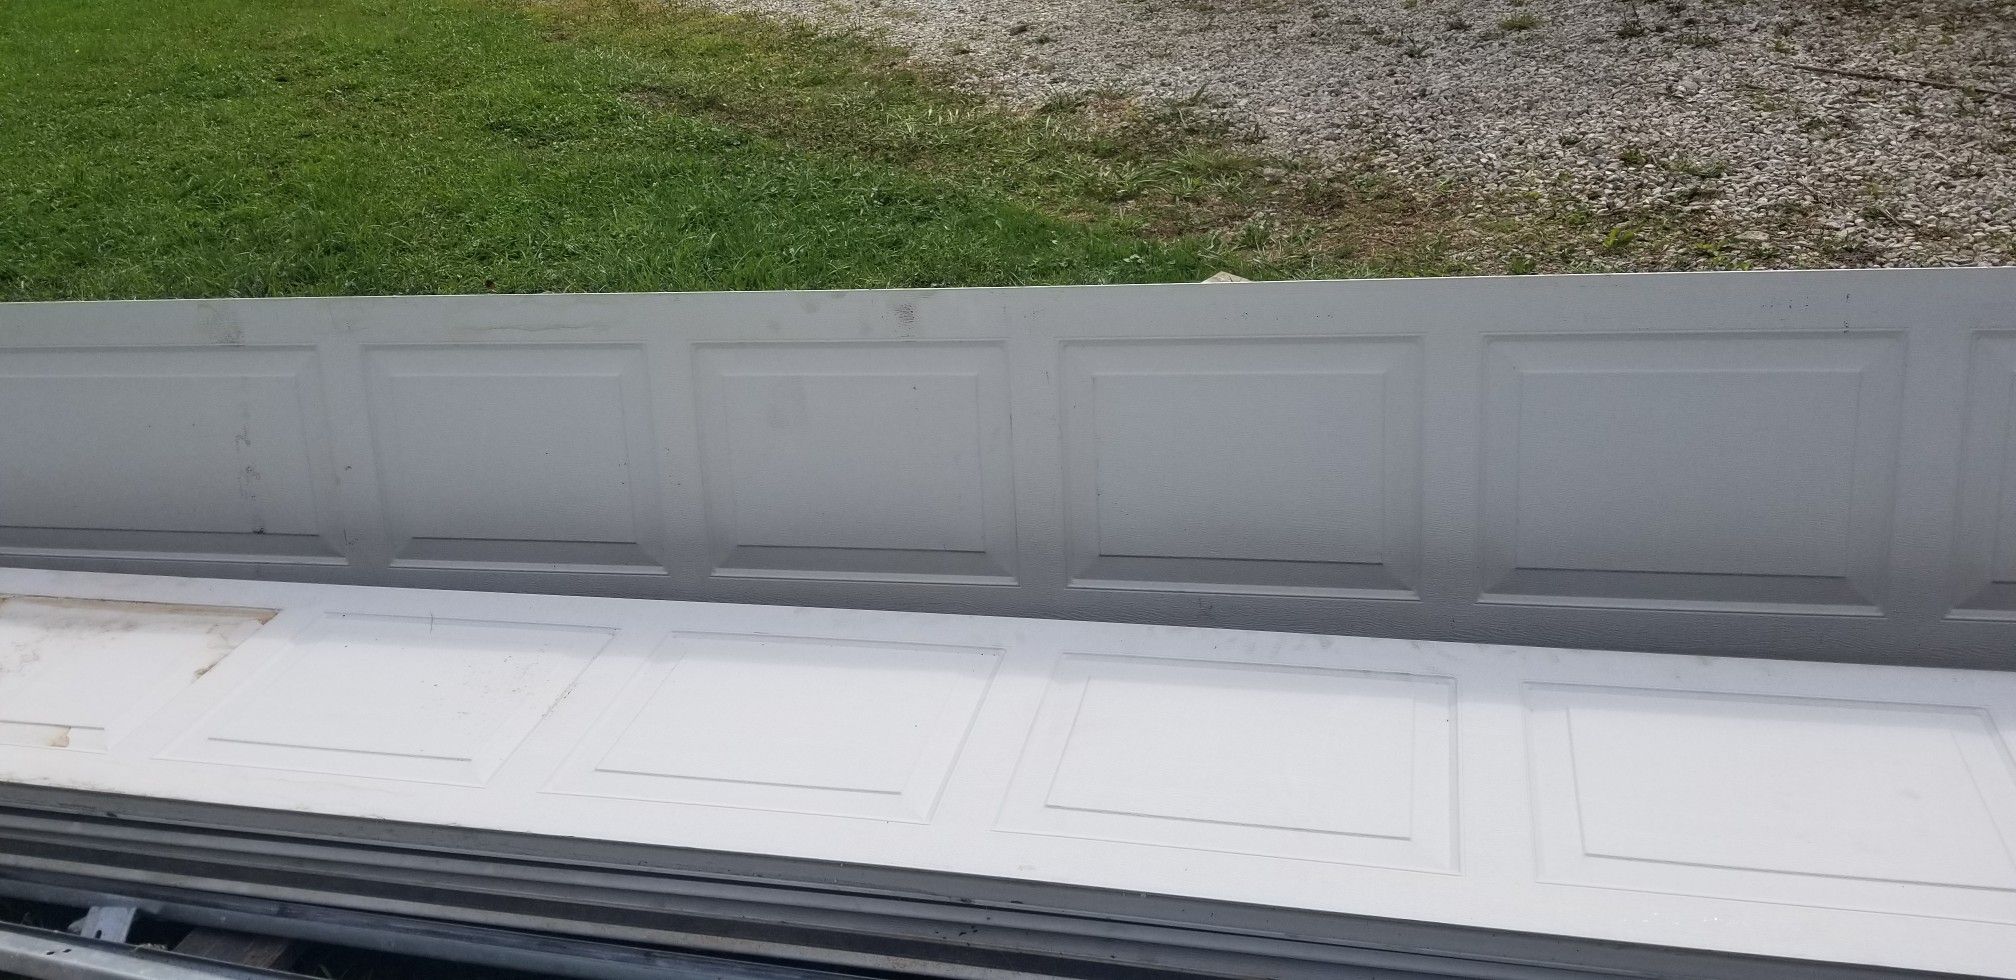 16x7 insulated garage door